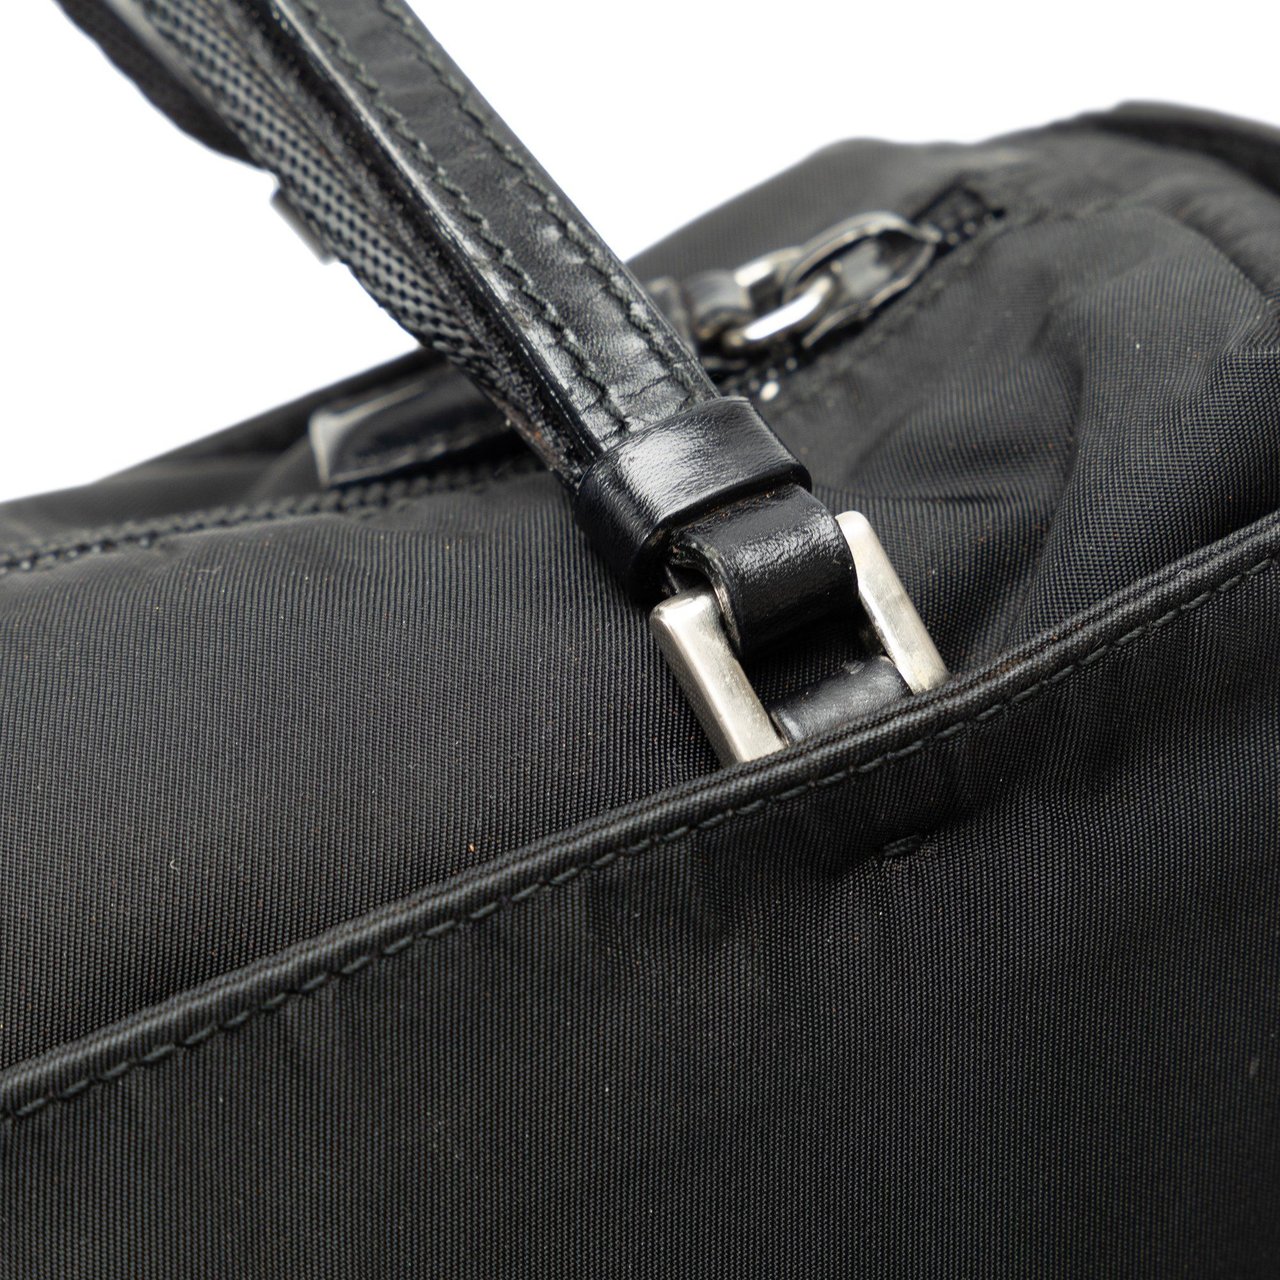 Prada Tessuto Handbag Zwart